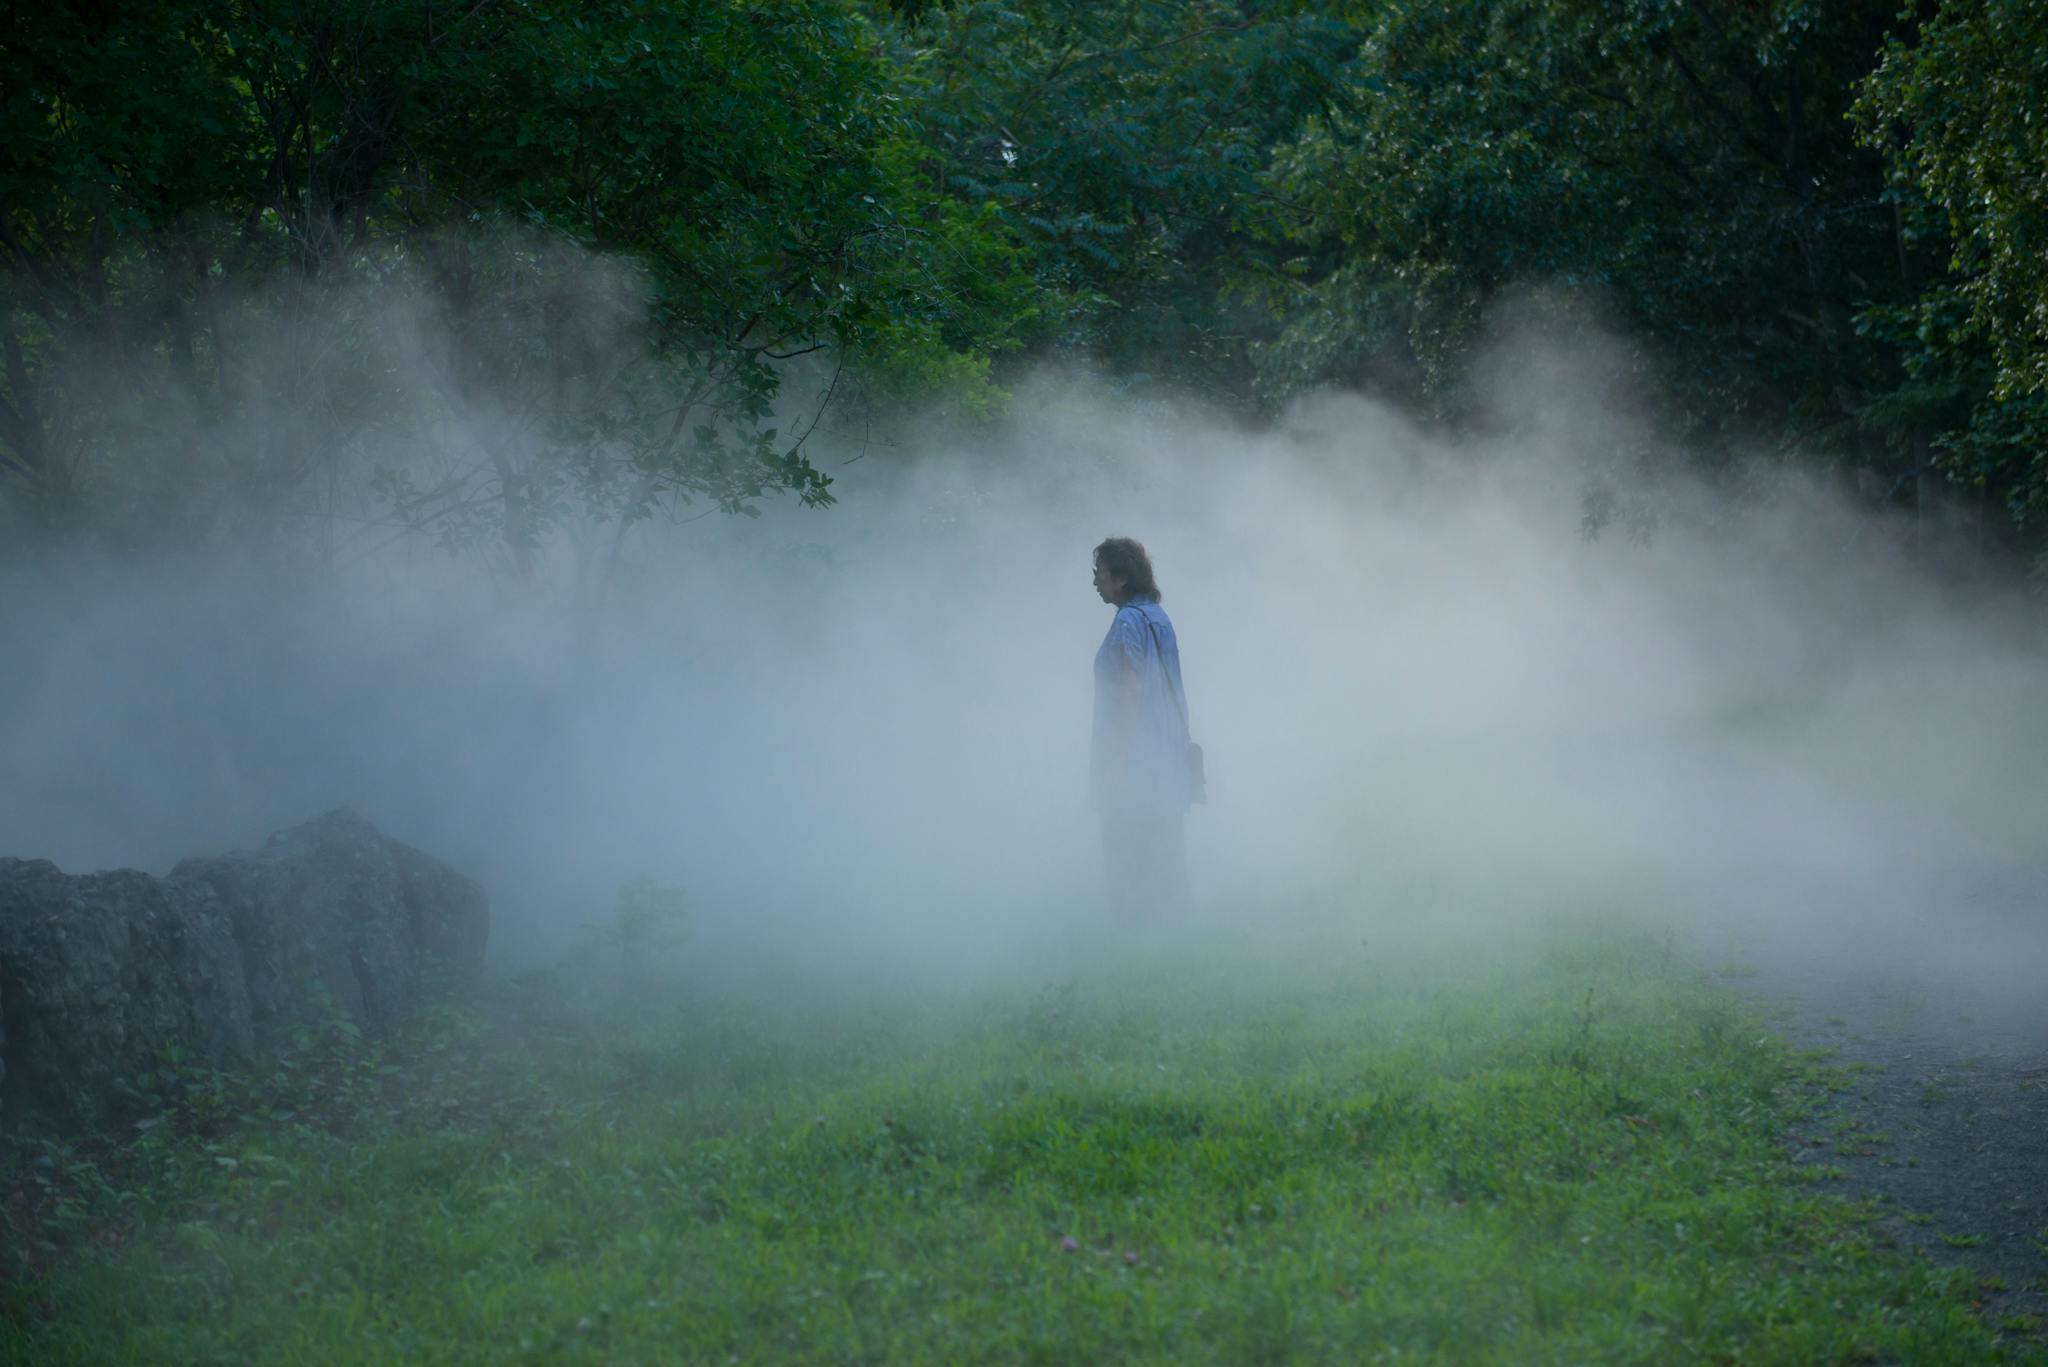 Fujiko Nakaya emerges in a scene of lush greenery and fog.